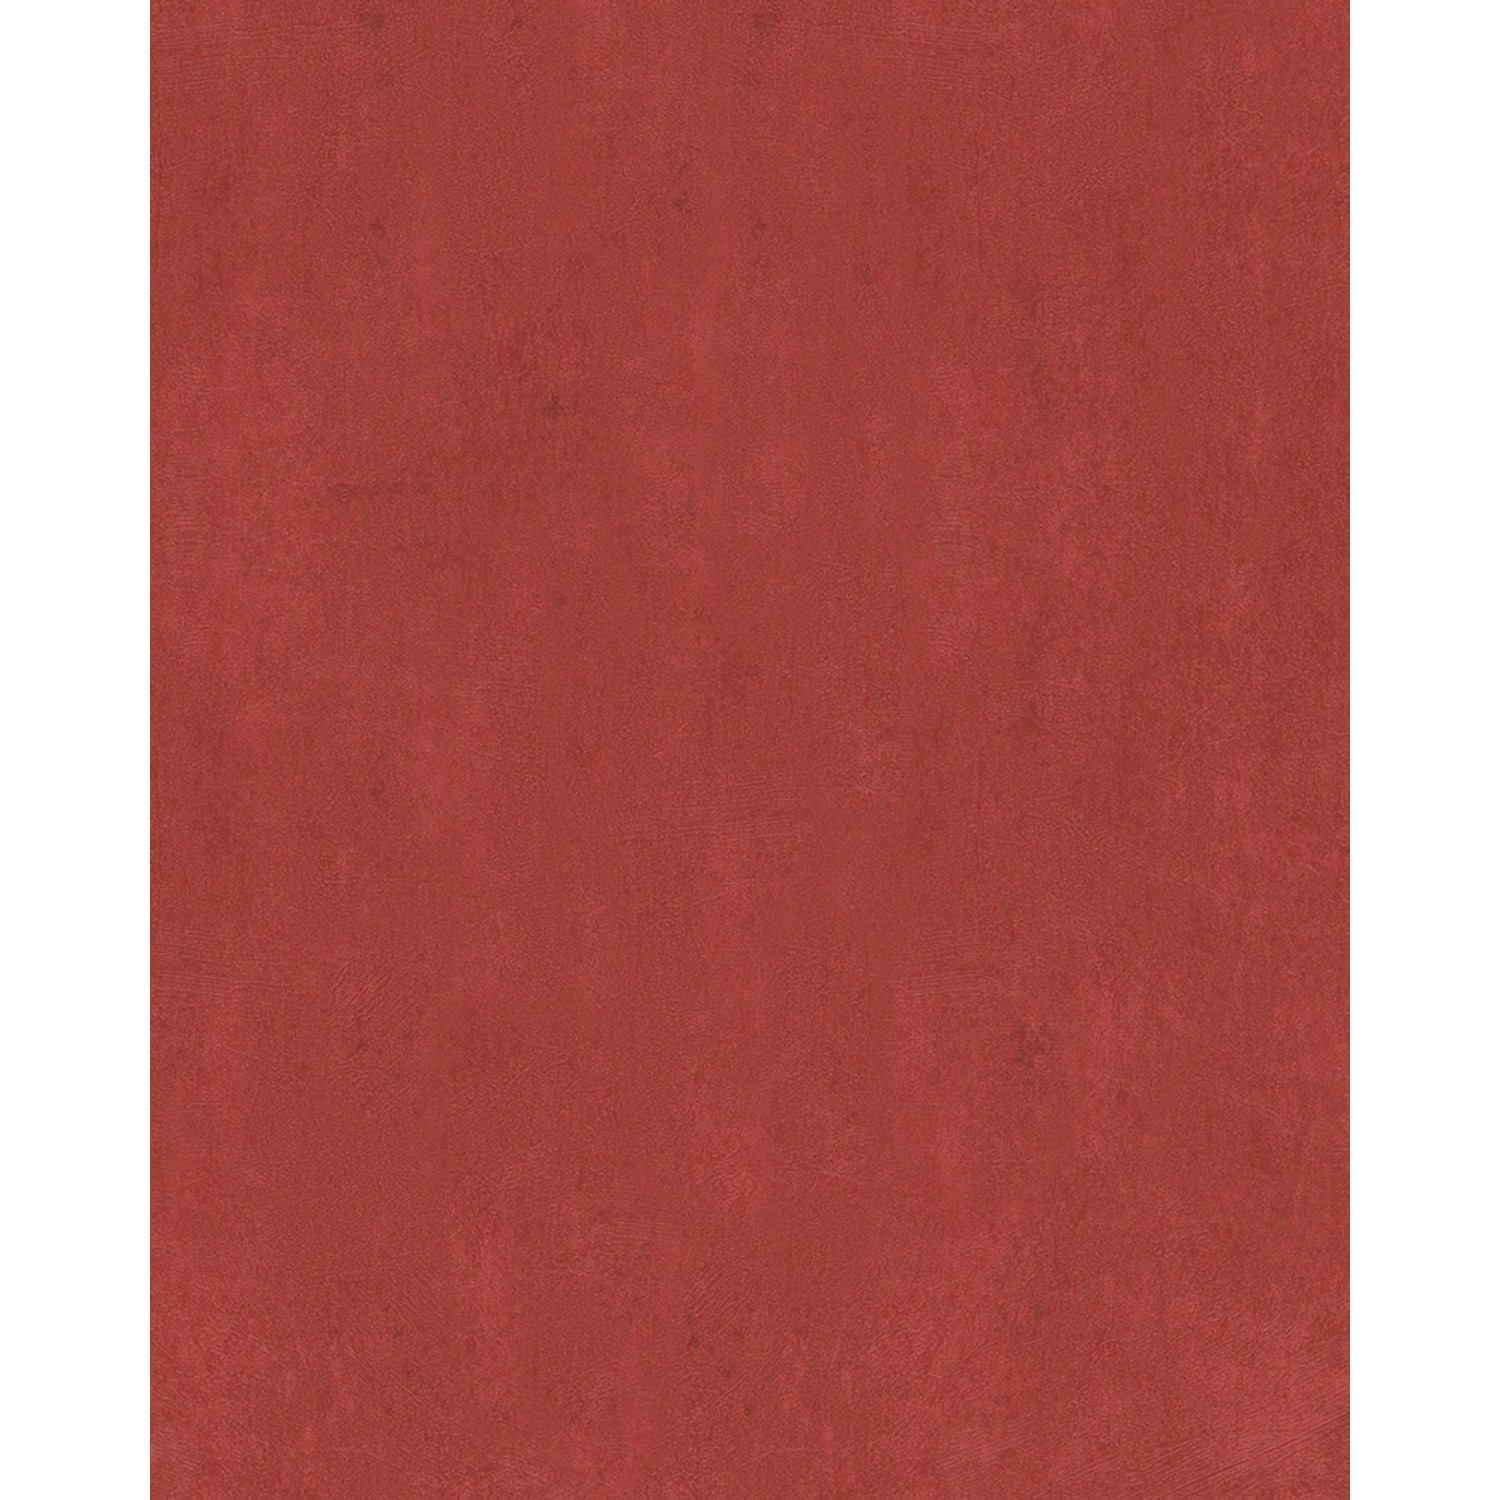 Marburg Vliestapete Strukturiert Rot 10,05 m x 0,53 m FSC® von Marburg